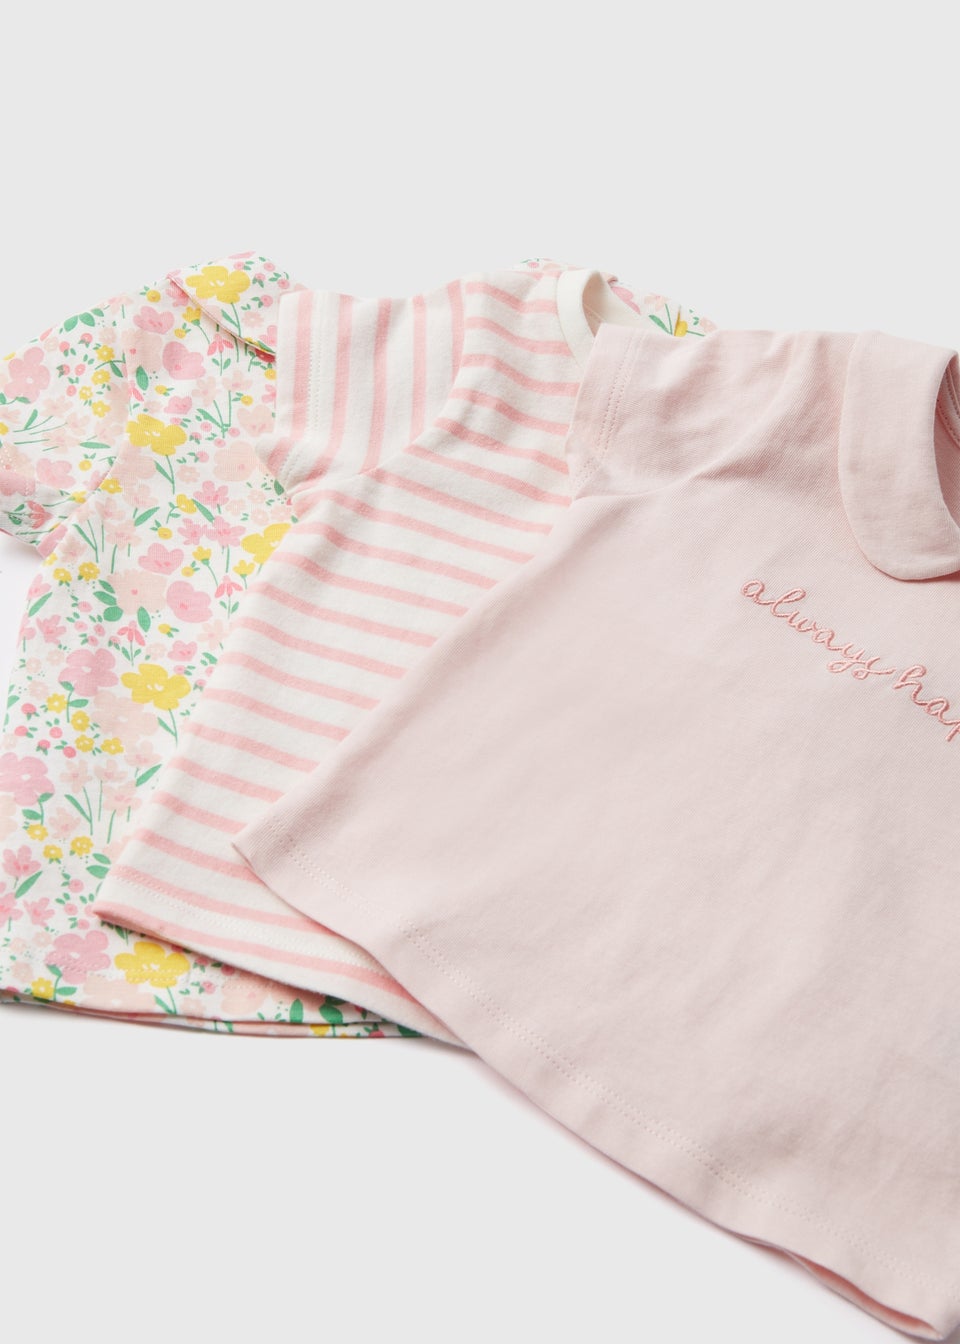 Baby 3 Pack Girls Pink Floral T-Shirt (Newborn- 23mths)